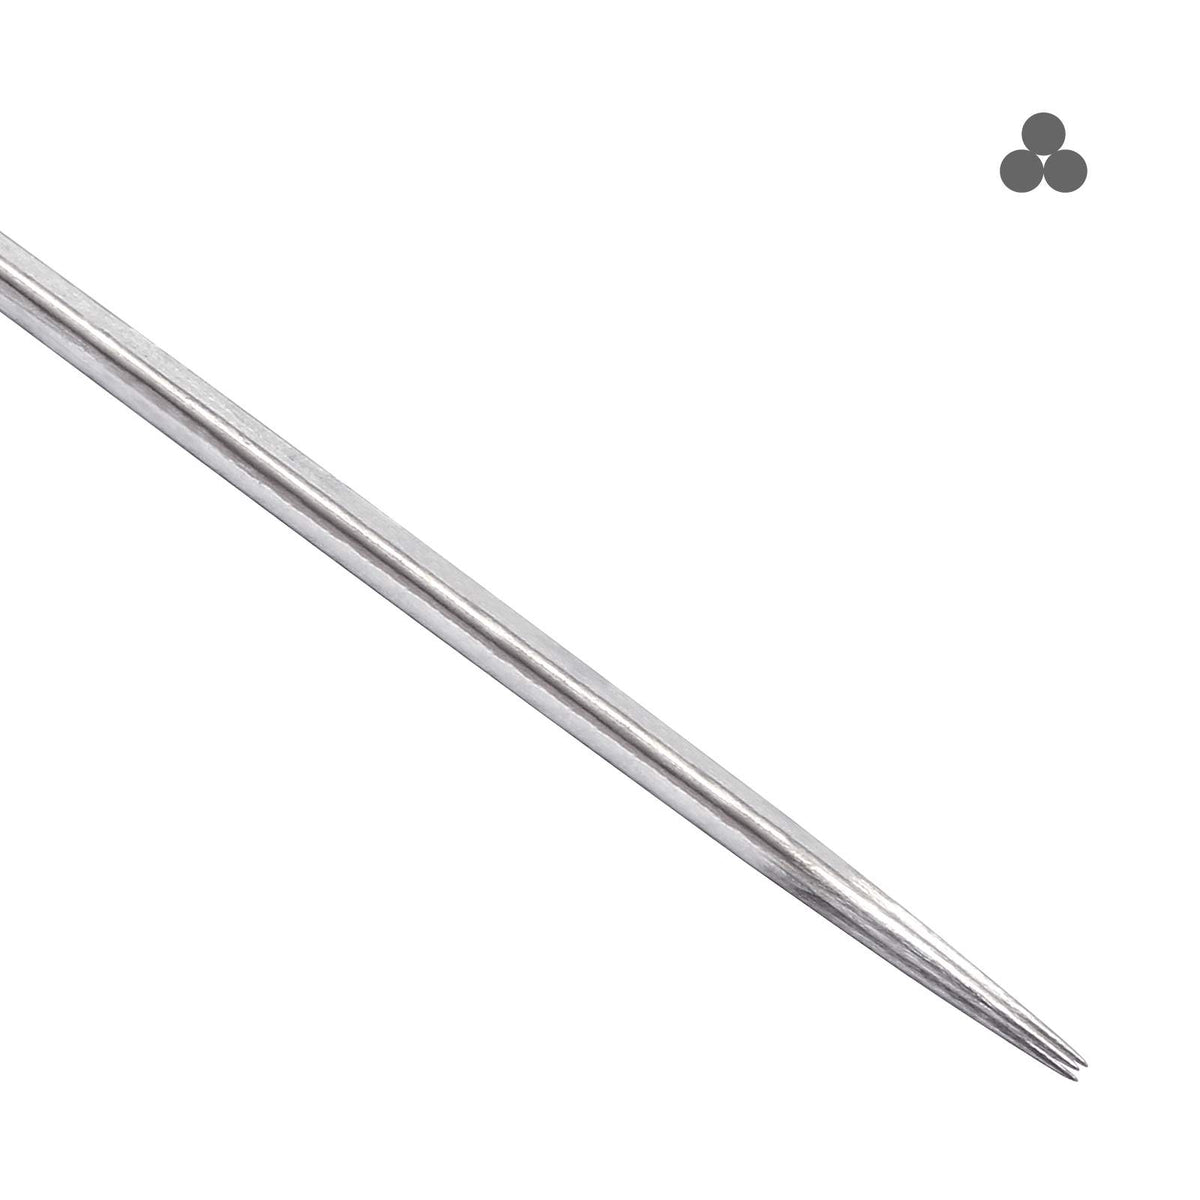 Yugui Tattoo Needles - 100pcs Stick and Poke Needles Long Bar Needles Round  Liner Shader and Magnum 1203RL 1205RL 1207RL 1209RL 1203RS 1205RS 1207RS